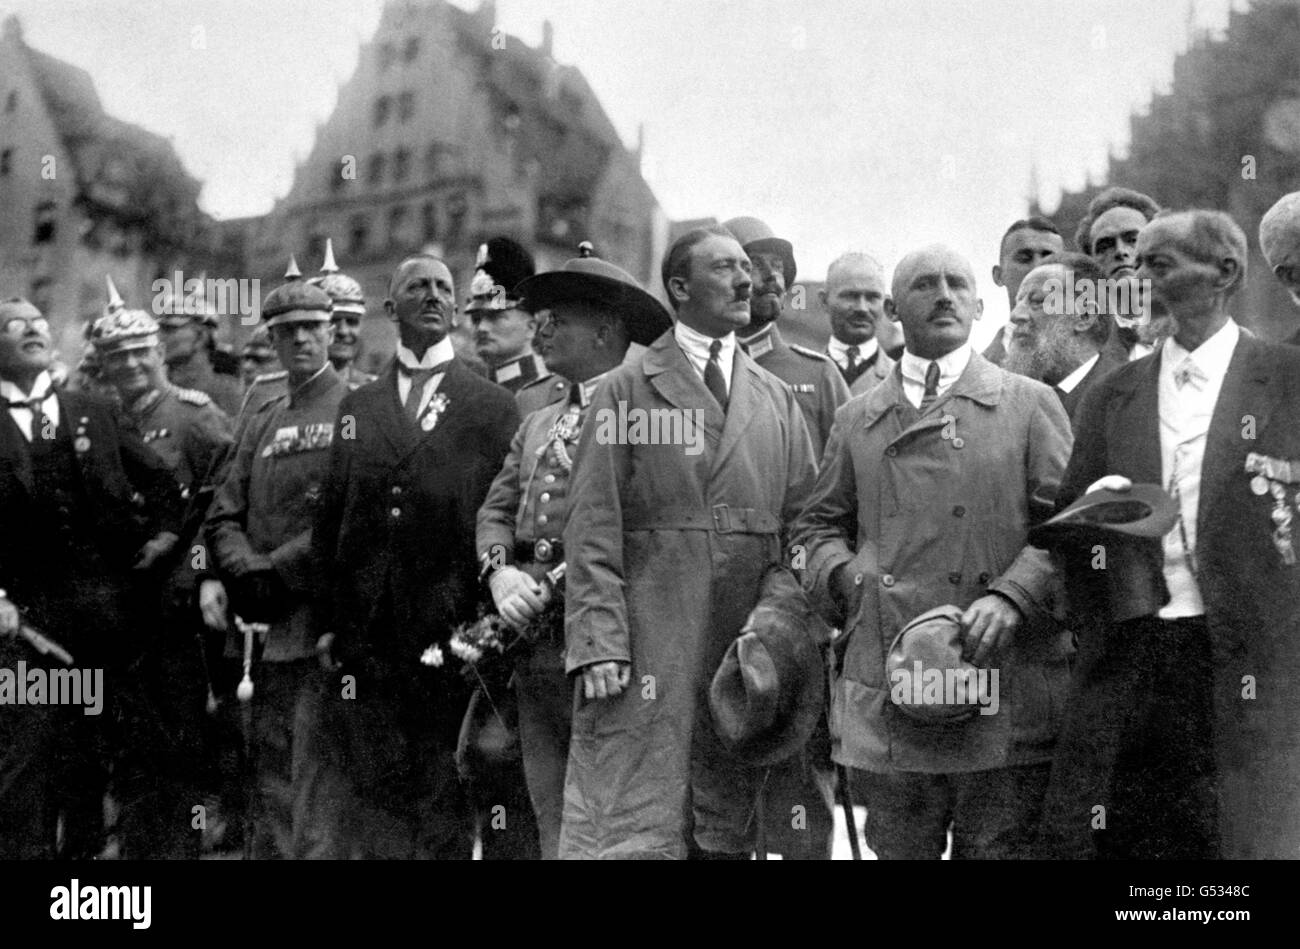 ADOLF HITLER 1923 (c, in Trenchcoat), Führer der NSDAP, und Julius Streicher (links Hitlers, kahl), Herausgeber von 'der Sturmer', beobachten einen marsch nationalistischer Anhänger am 'Deutschen Tag' in Nürnberg, Bayern. Schätzungsweise 100,000 Personen haben an der Veranstaltung teilgenommen. *mit ihnen sind Würdenträger und Offiziere der kaiserlichen Armee aus der Kaiserzeit. Stockfoto